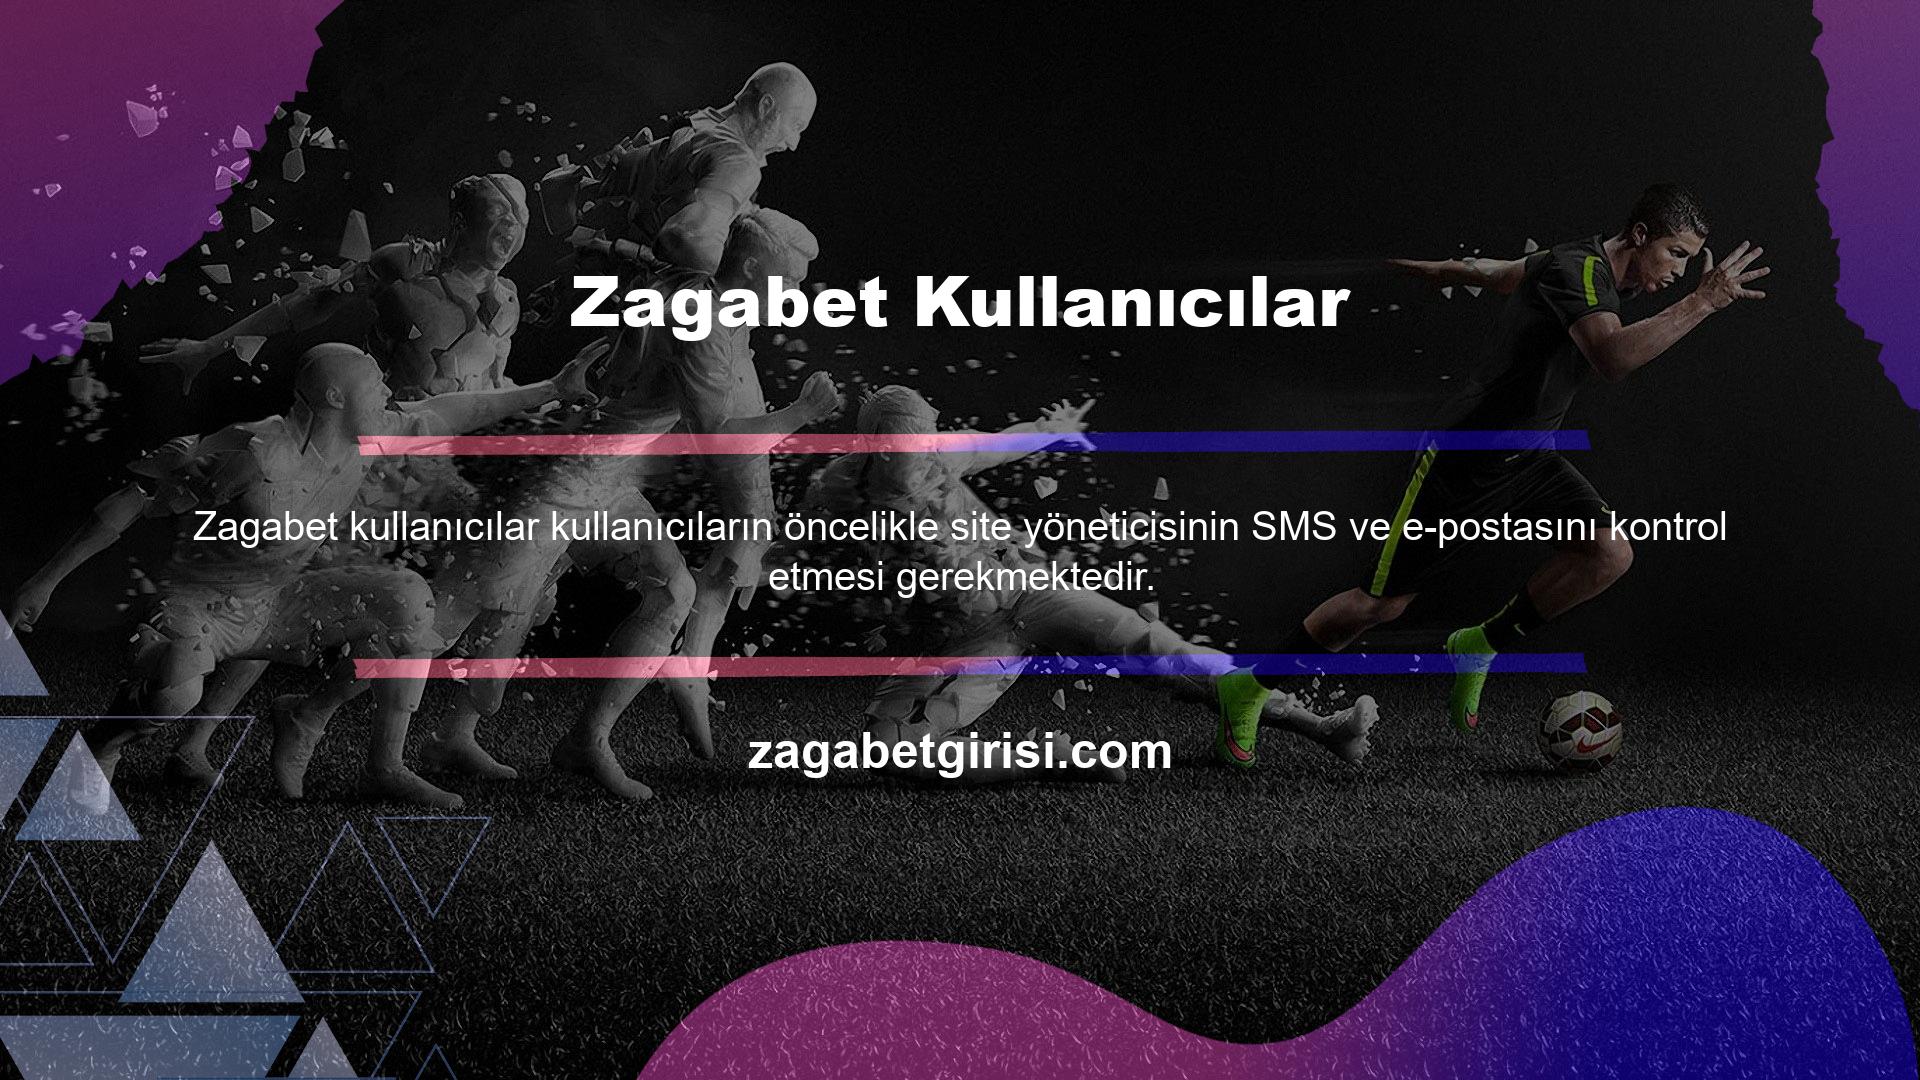 Zagabet yeni giriş adresinin gerektiğinde resmi Twitter, Instagram, Telegram vb